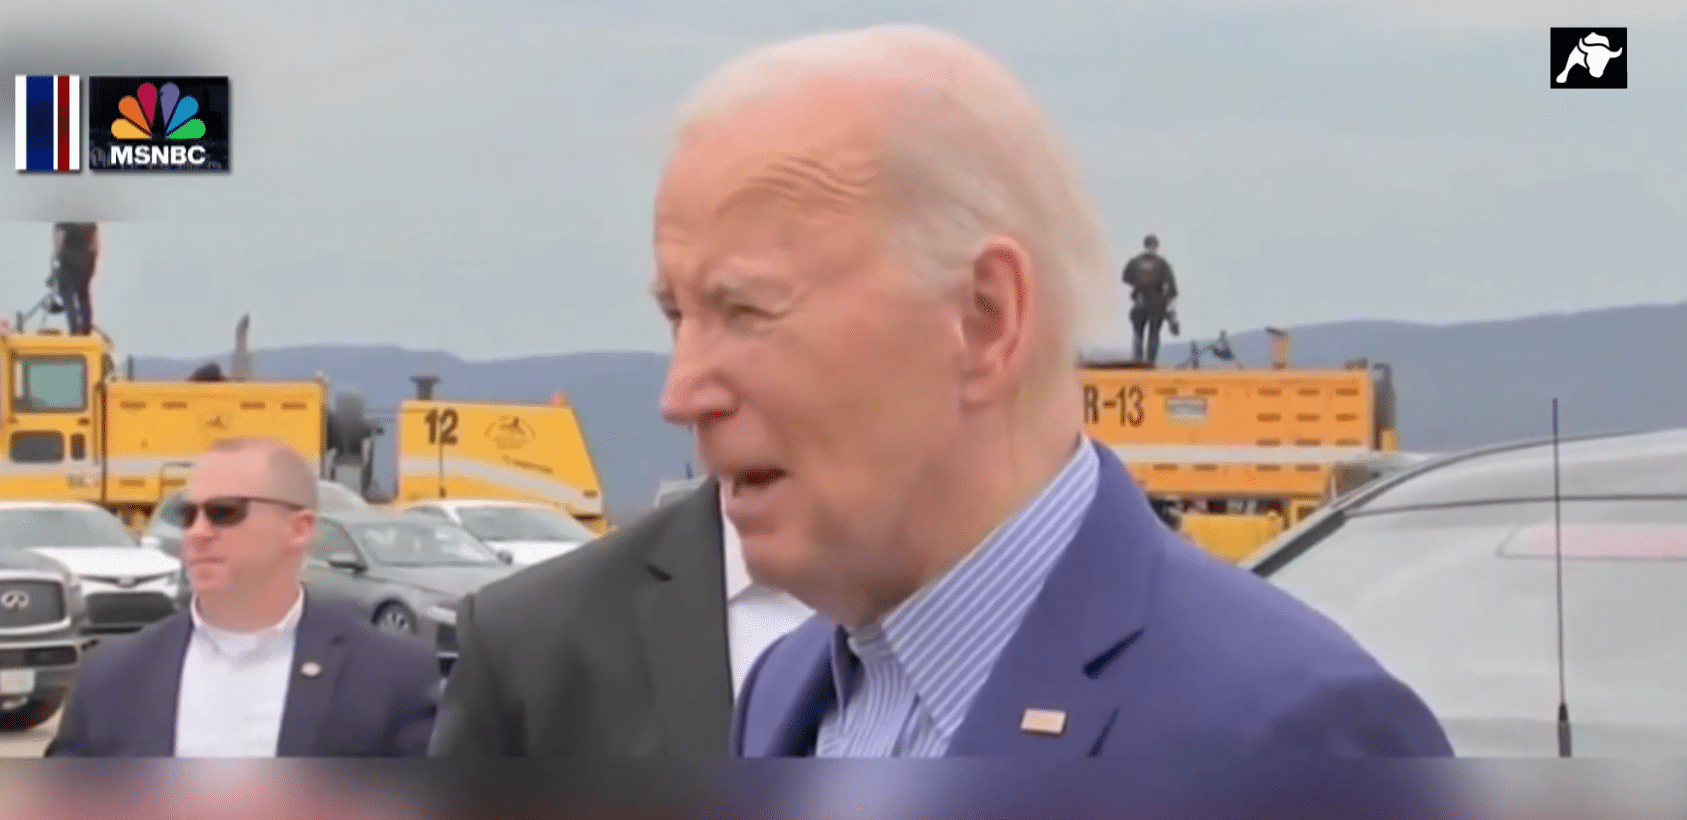 El tío de Joe Biden… que fue comido por caníbales